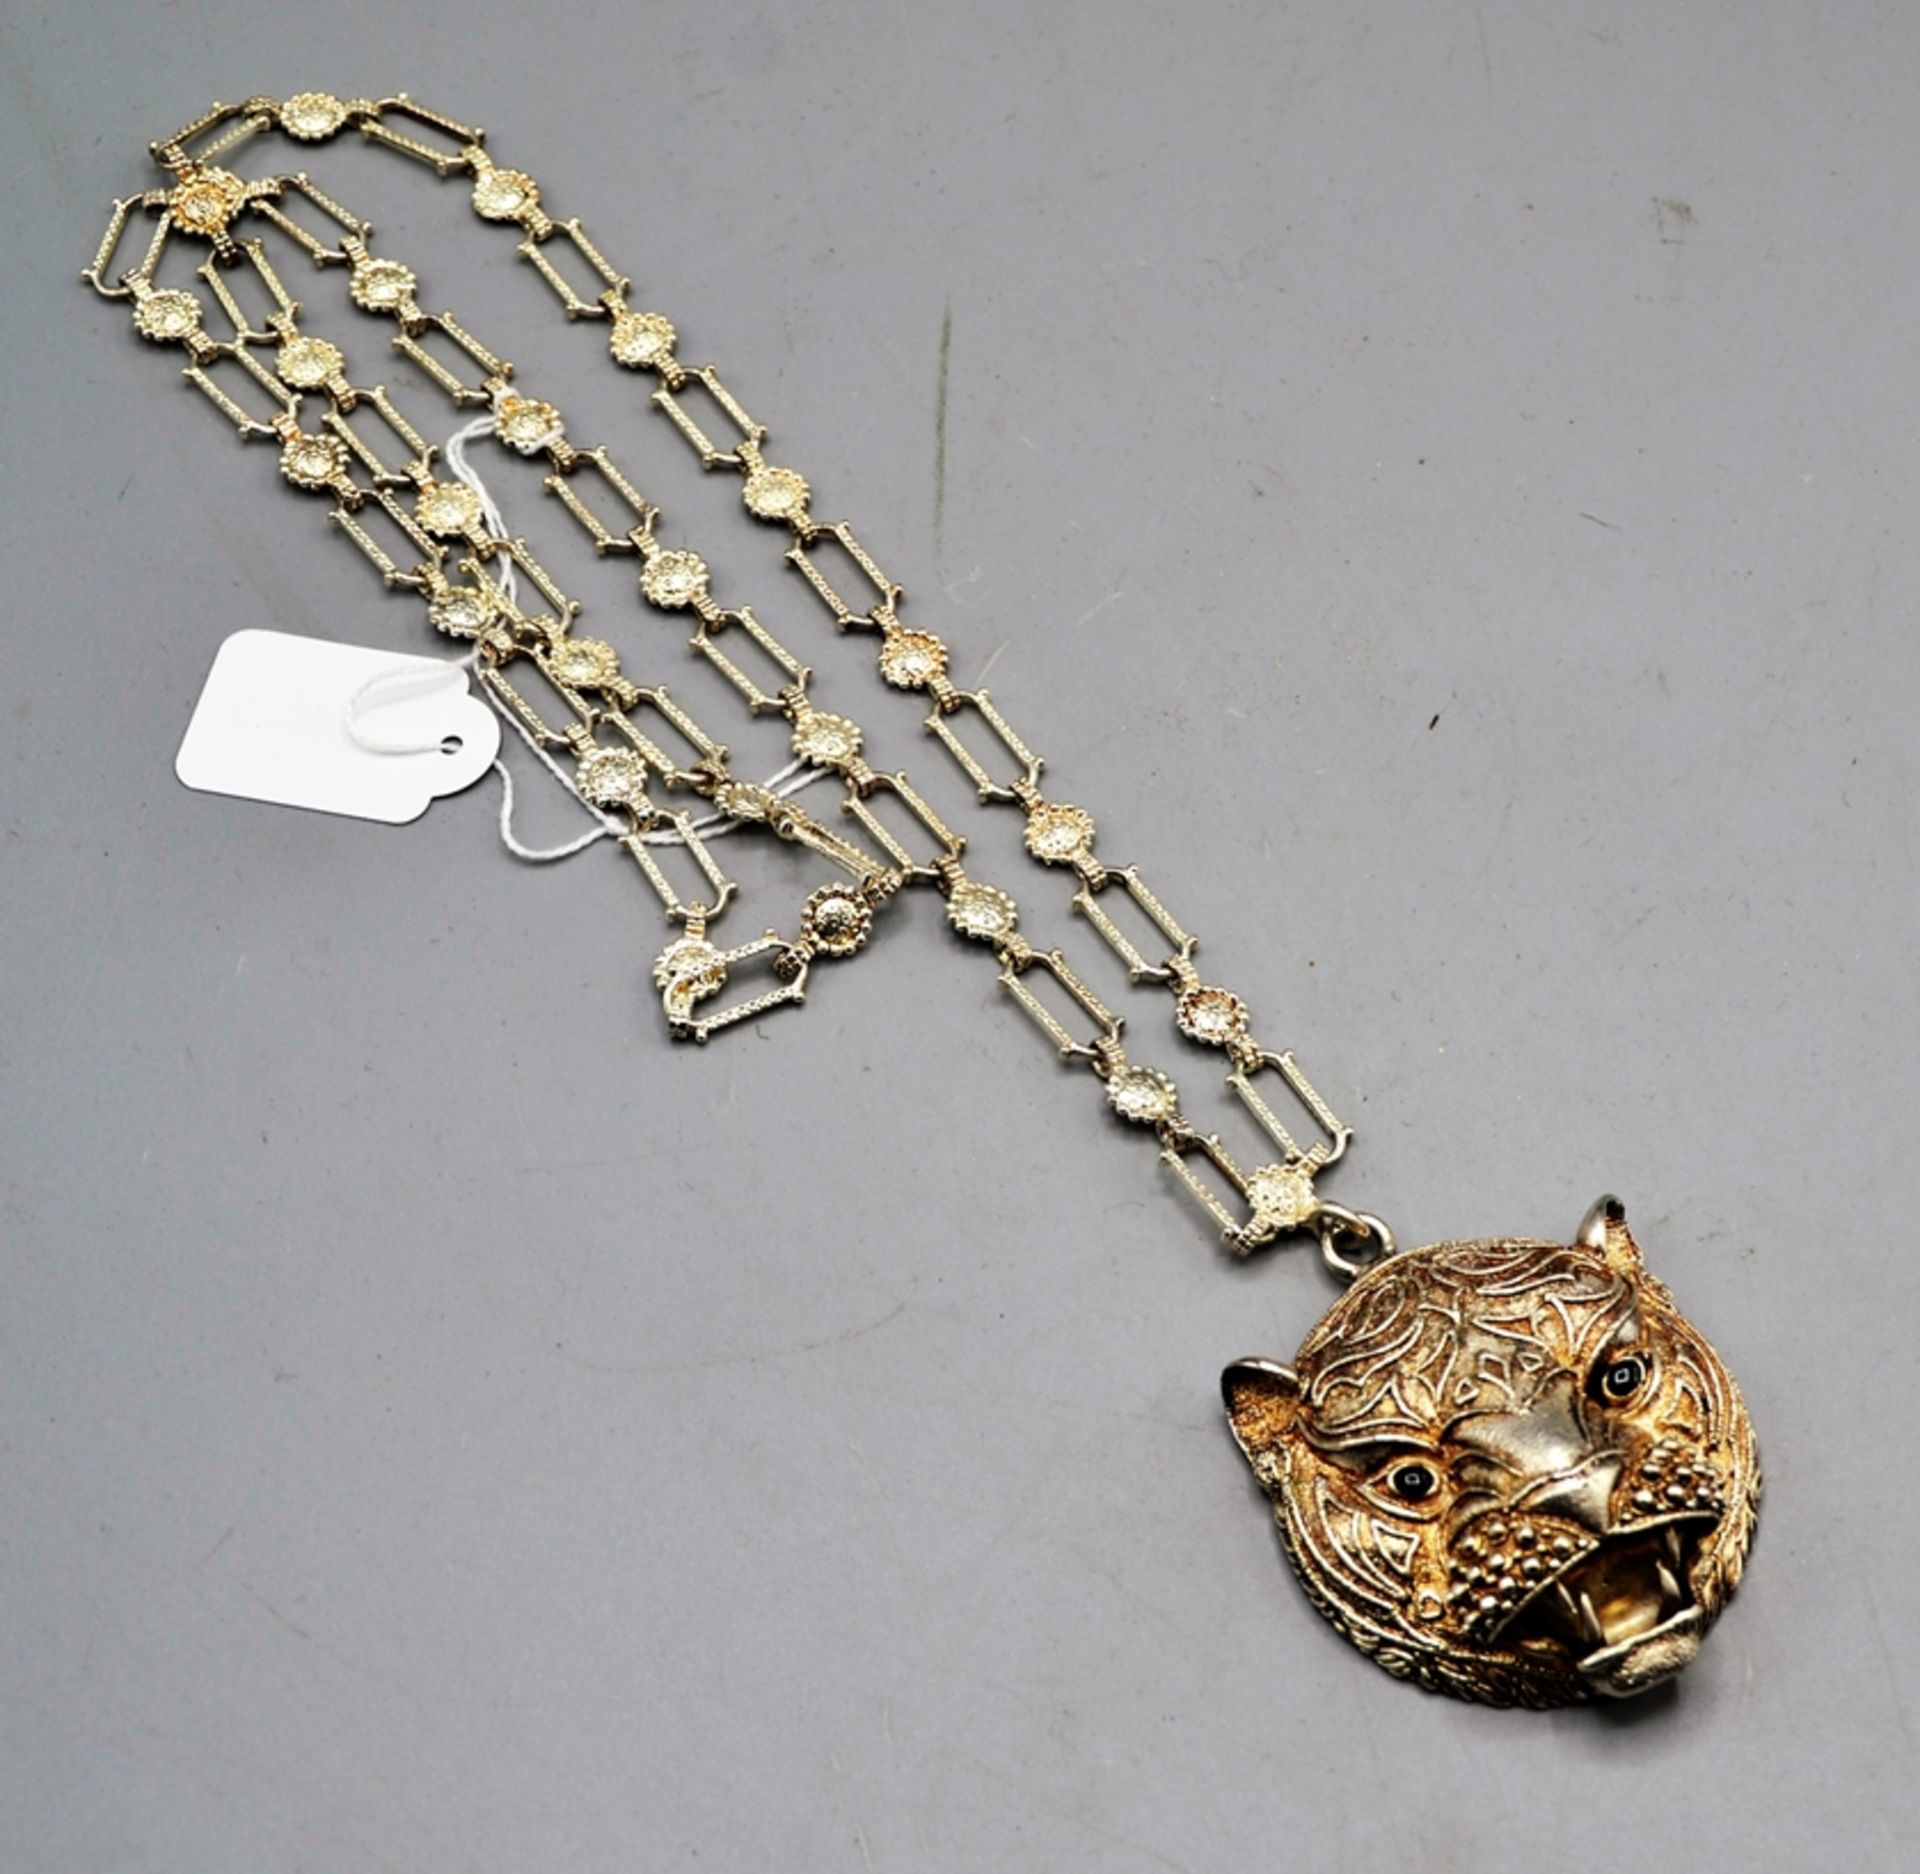 Leoparden Kopf Silber 925 Anhänger mit Kette, Anhänger Ø ca. 5,5 cm Öse mit 925 gepunzt, Kette evtl